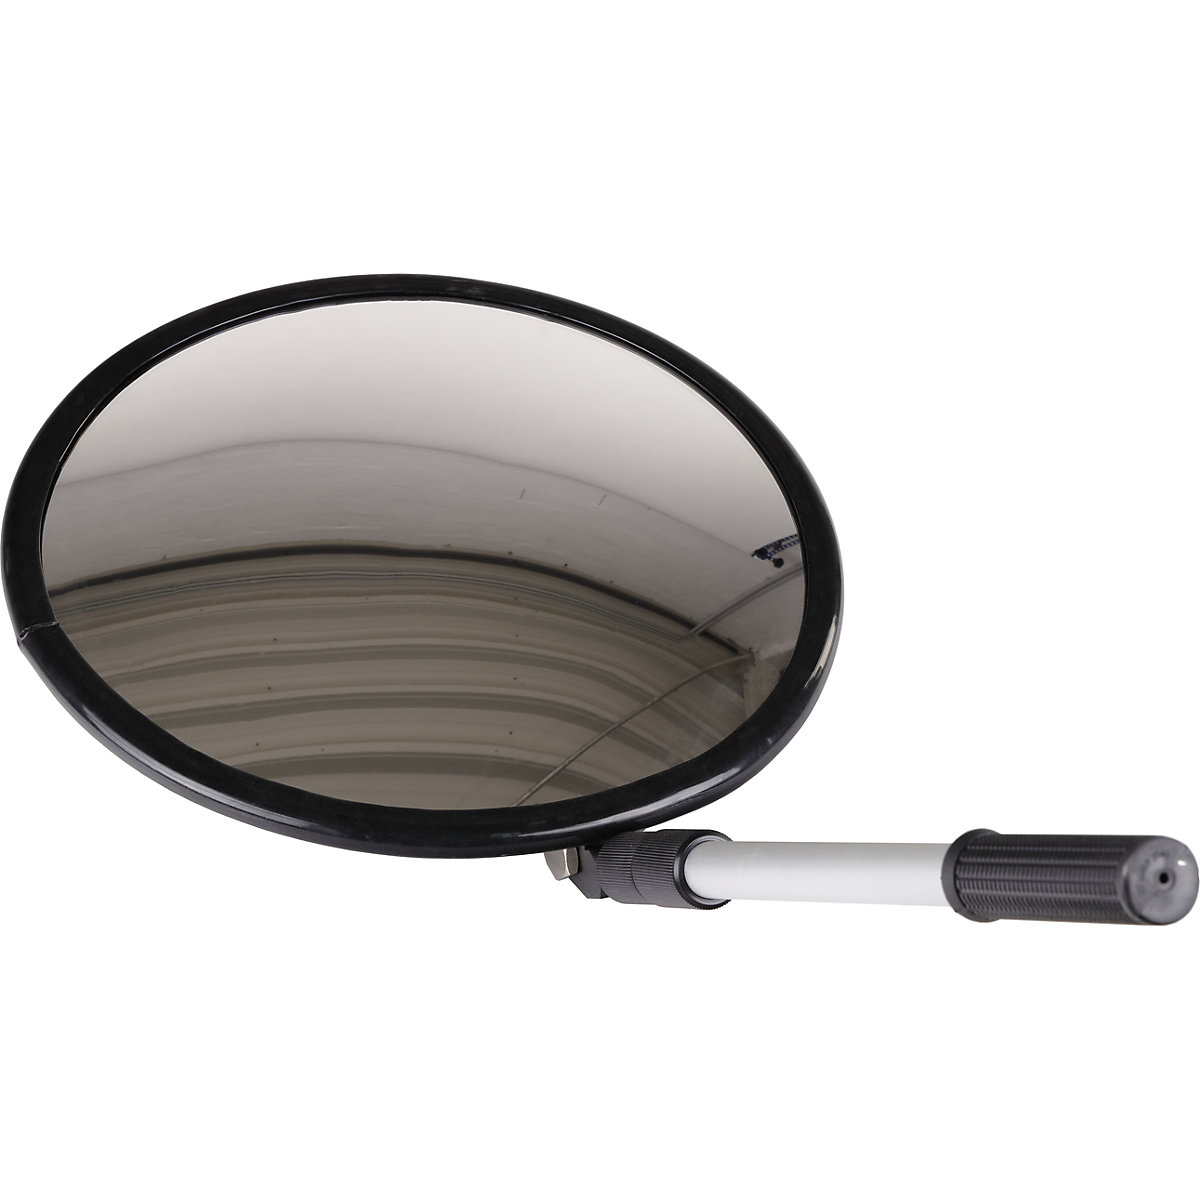 Teleskop-Inspektionsspiegel, runder Auto-Inspektionsspiegel, 50mm